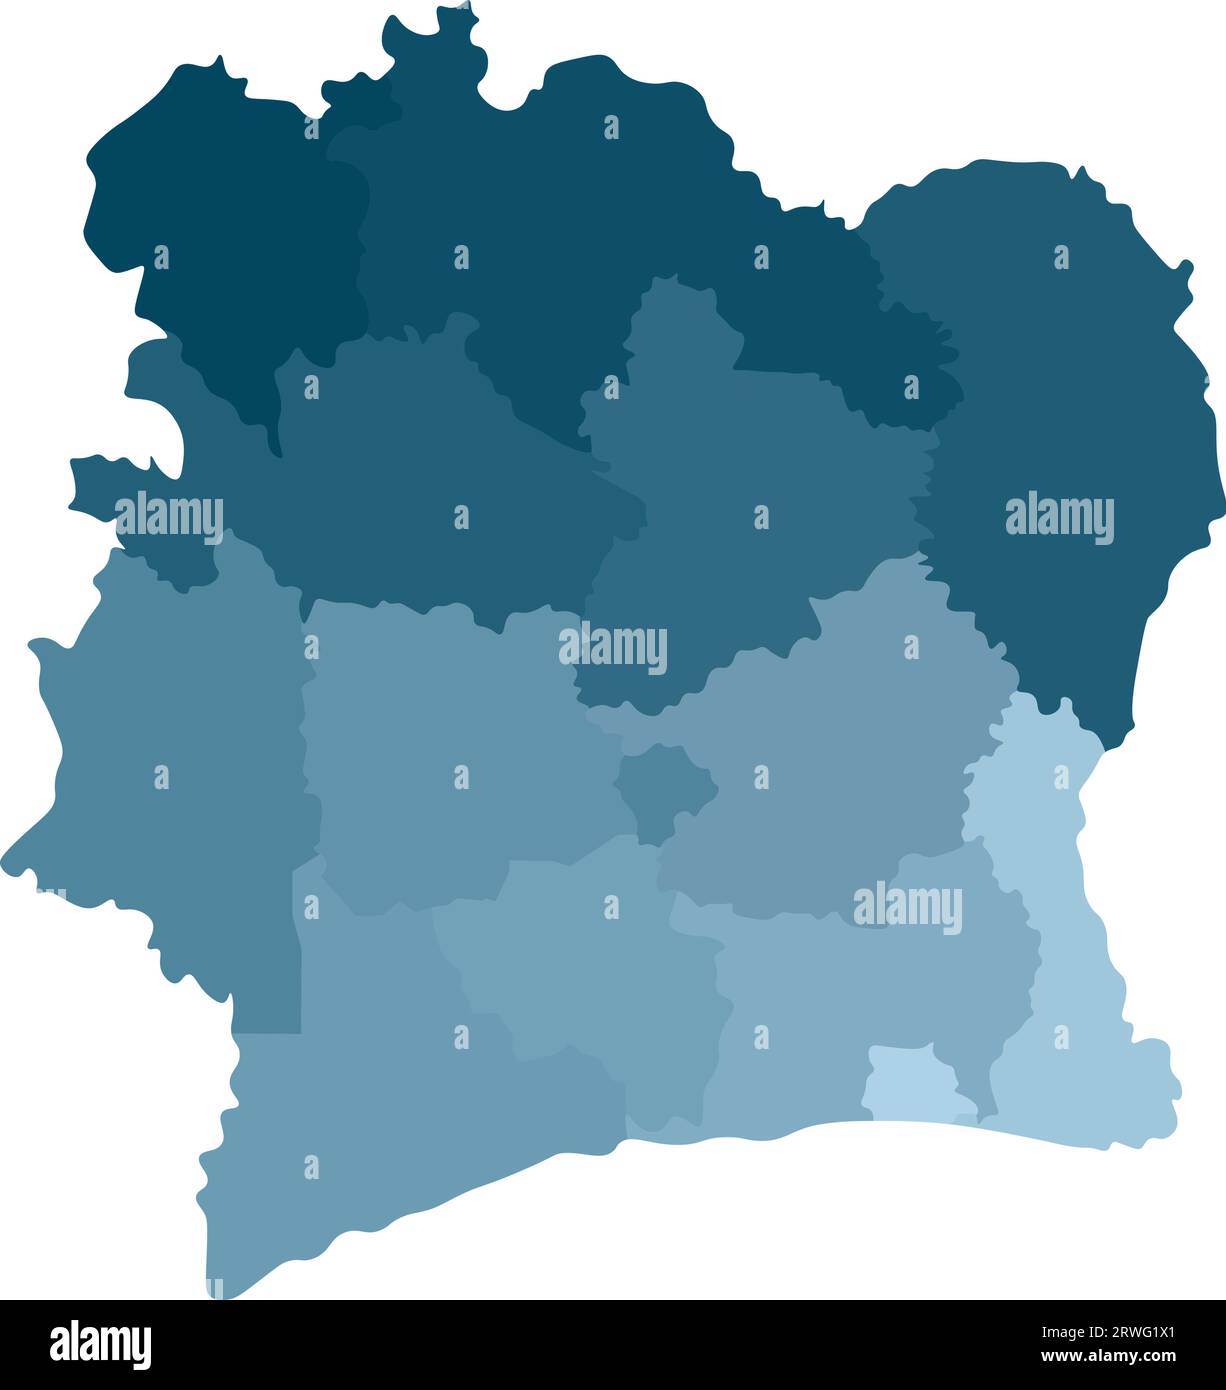 Illustration vectorielle isolée de la carte administrative simplifiée Côte d'Ivoire (Côte d'Ivoire). Frontières des comtés. Silhouettes de couleurs kaki bleues. WHI Illustration de Vecteur